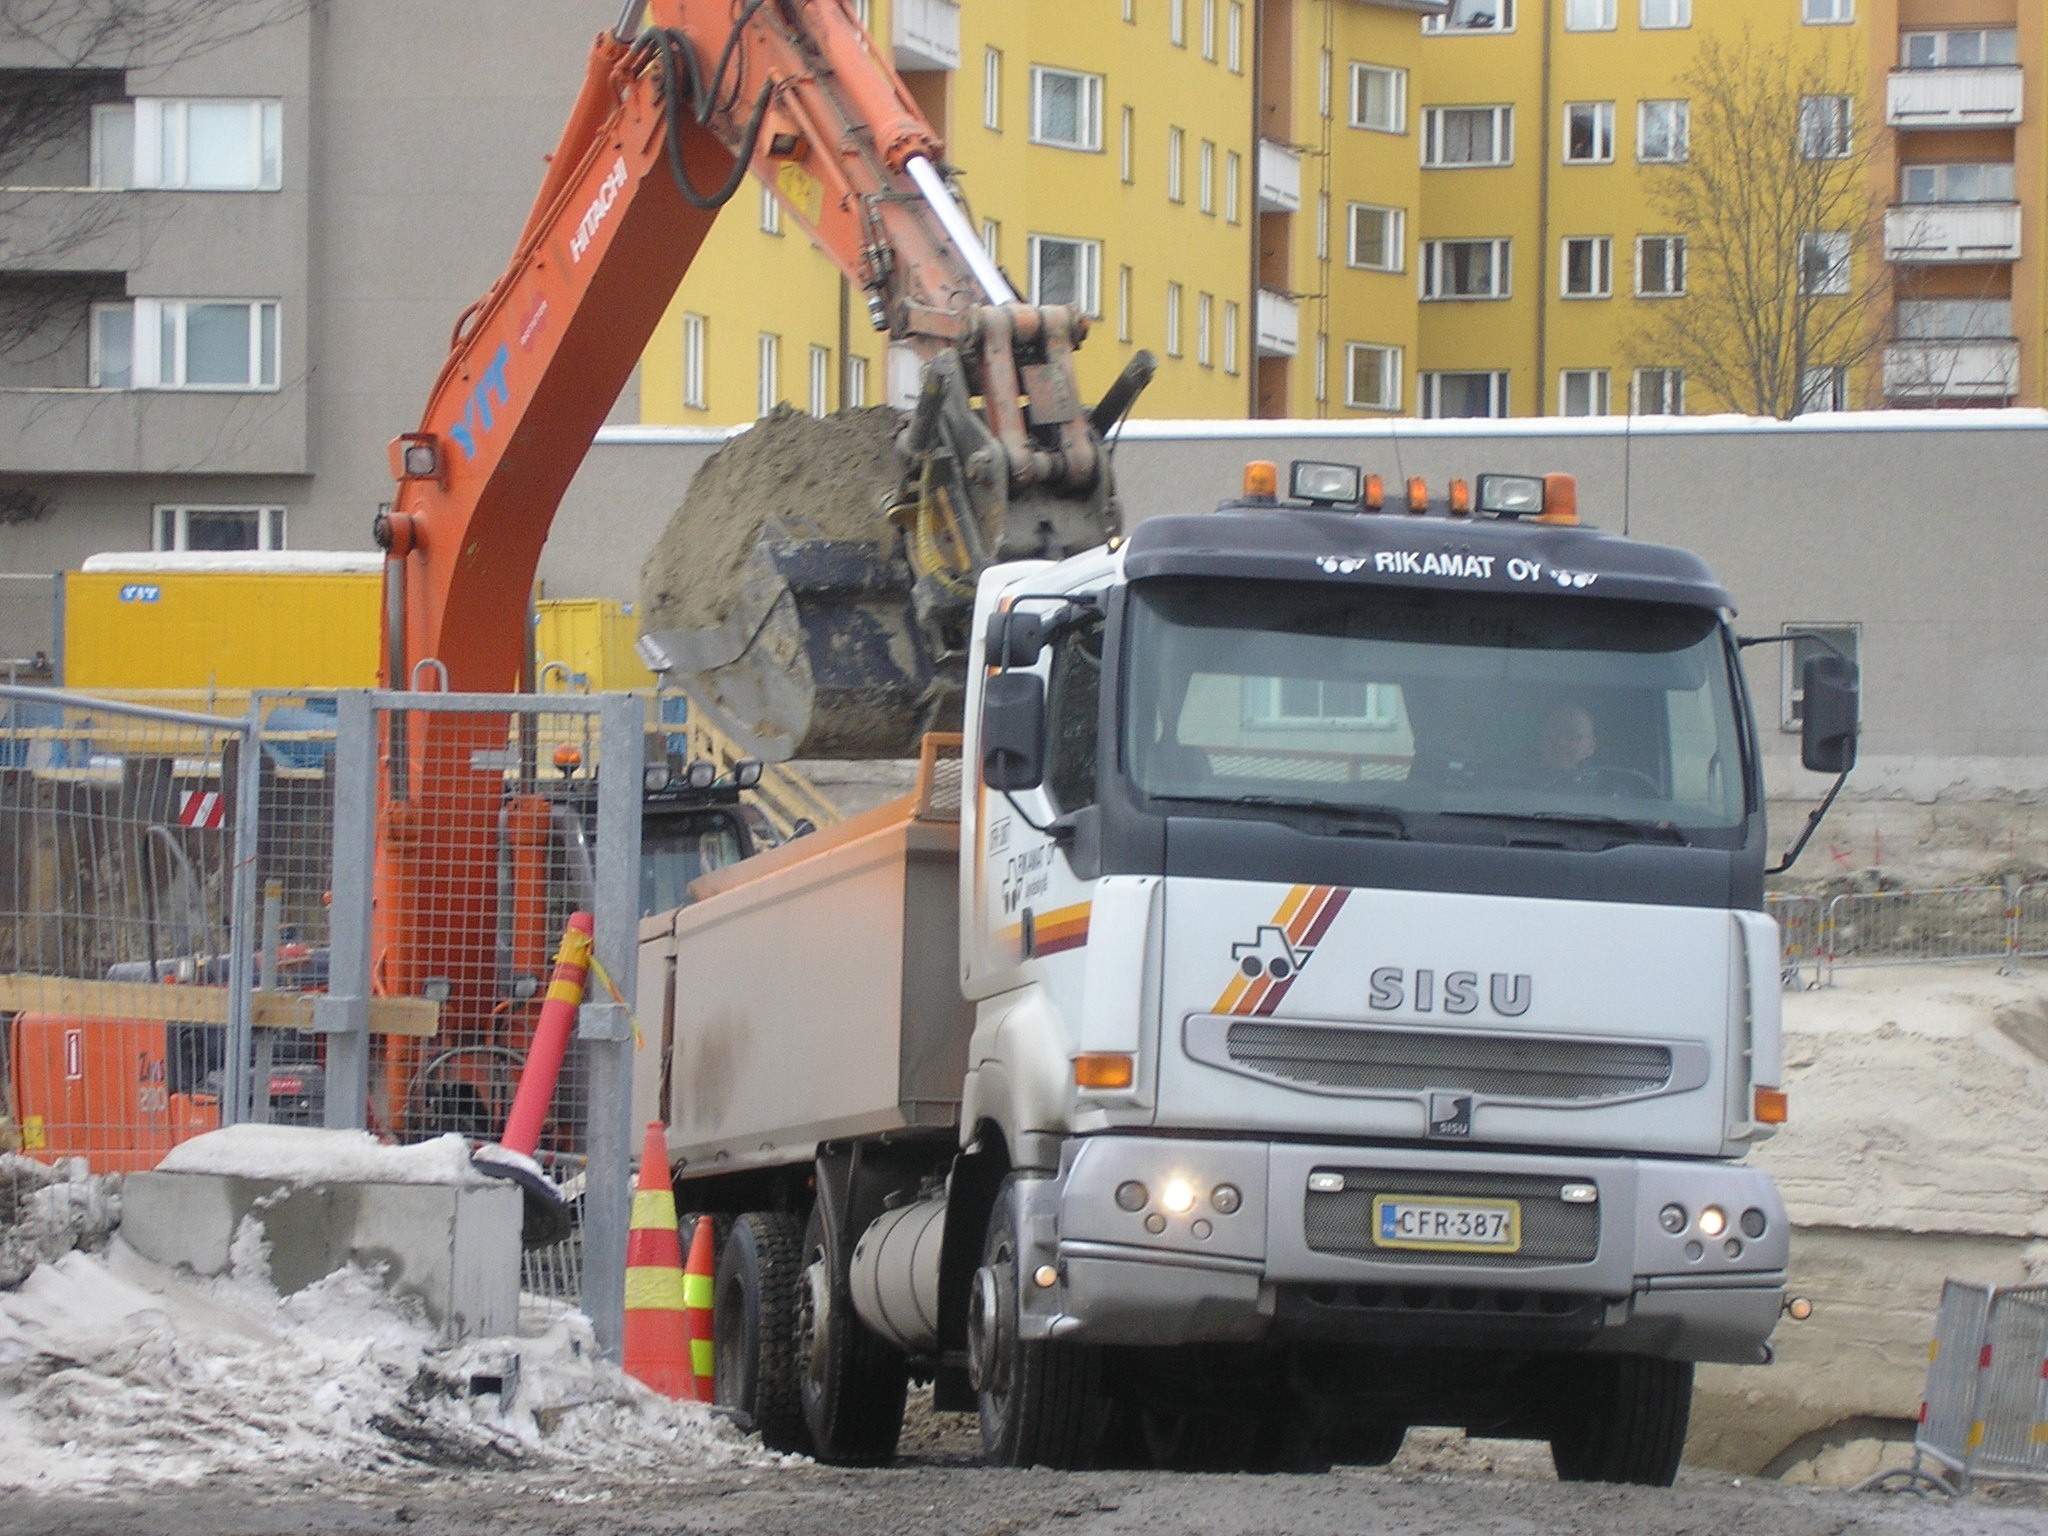 File:Excavator loading sand onto a truck in Jyväskylä.jpg ...